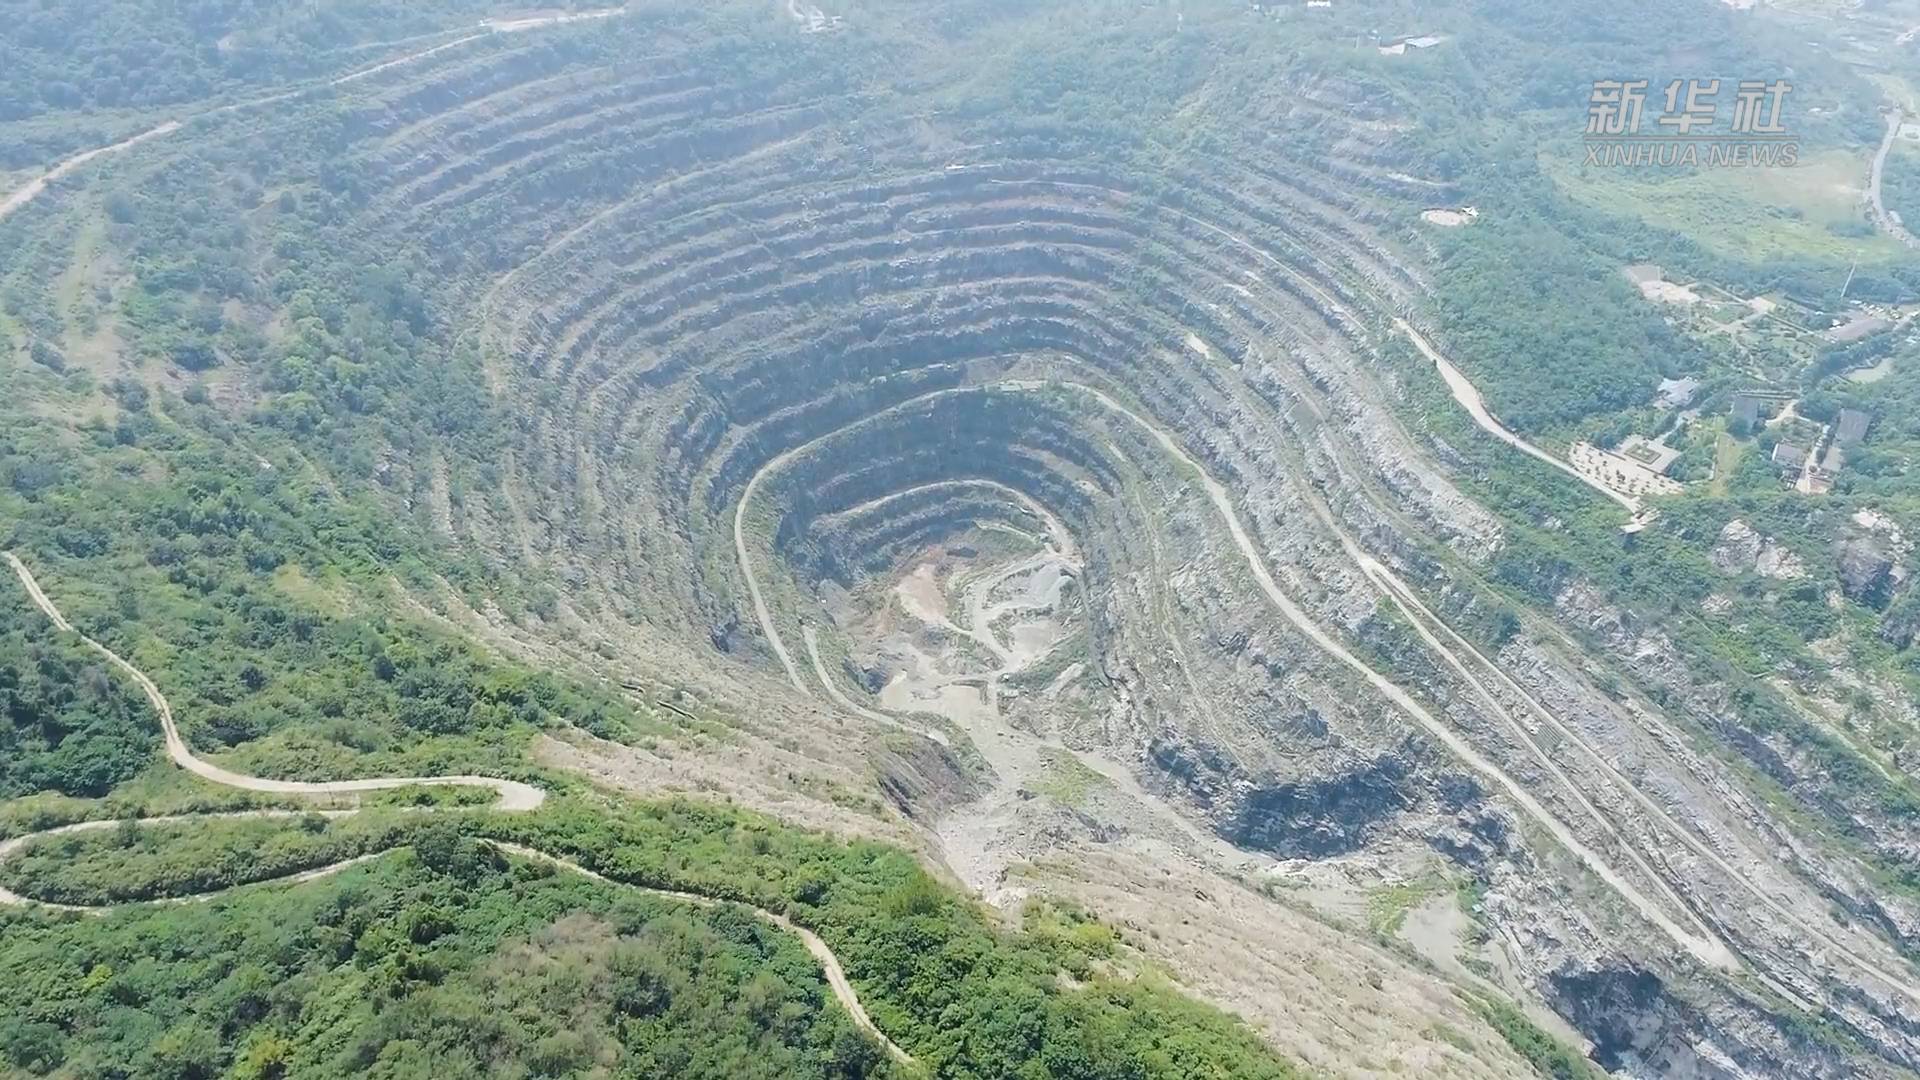 黄石国家矿山公园:"亚洲第一天坑"的绿色转变